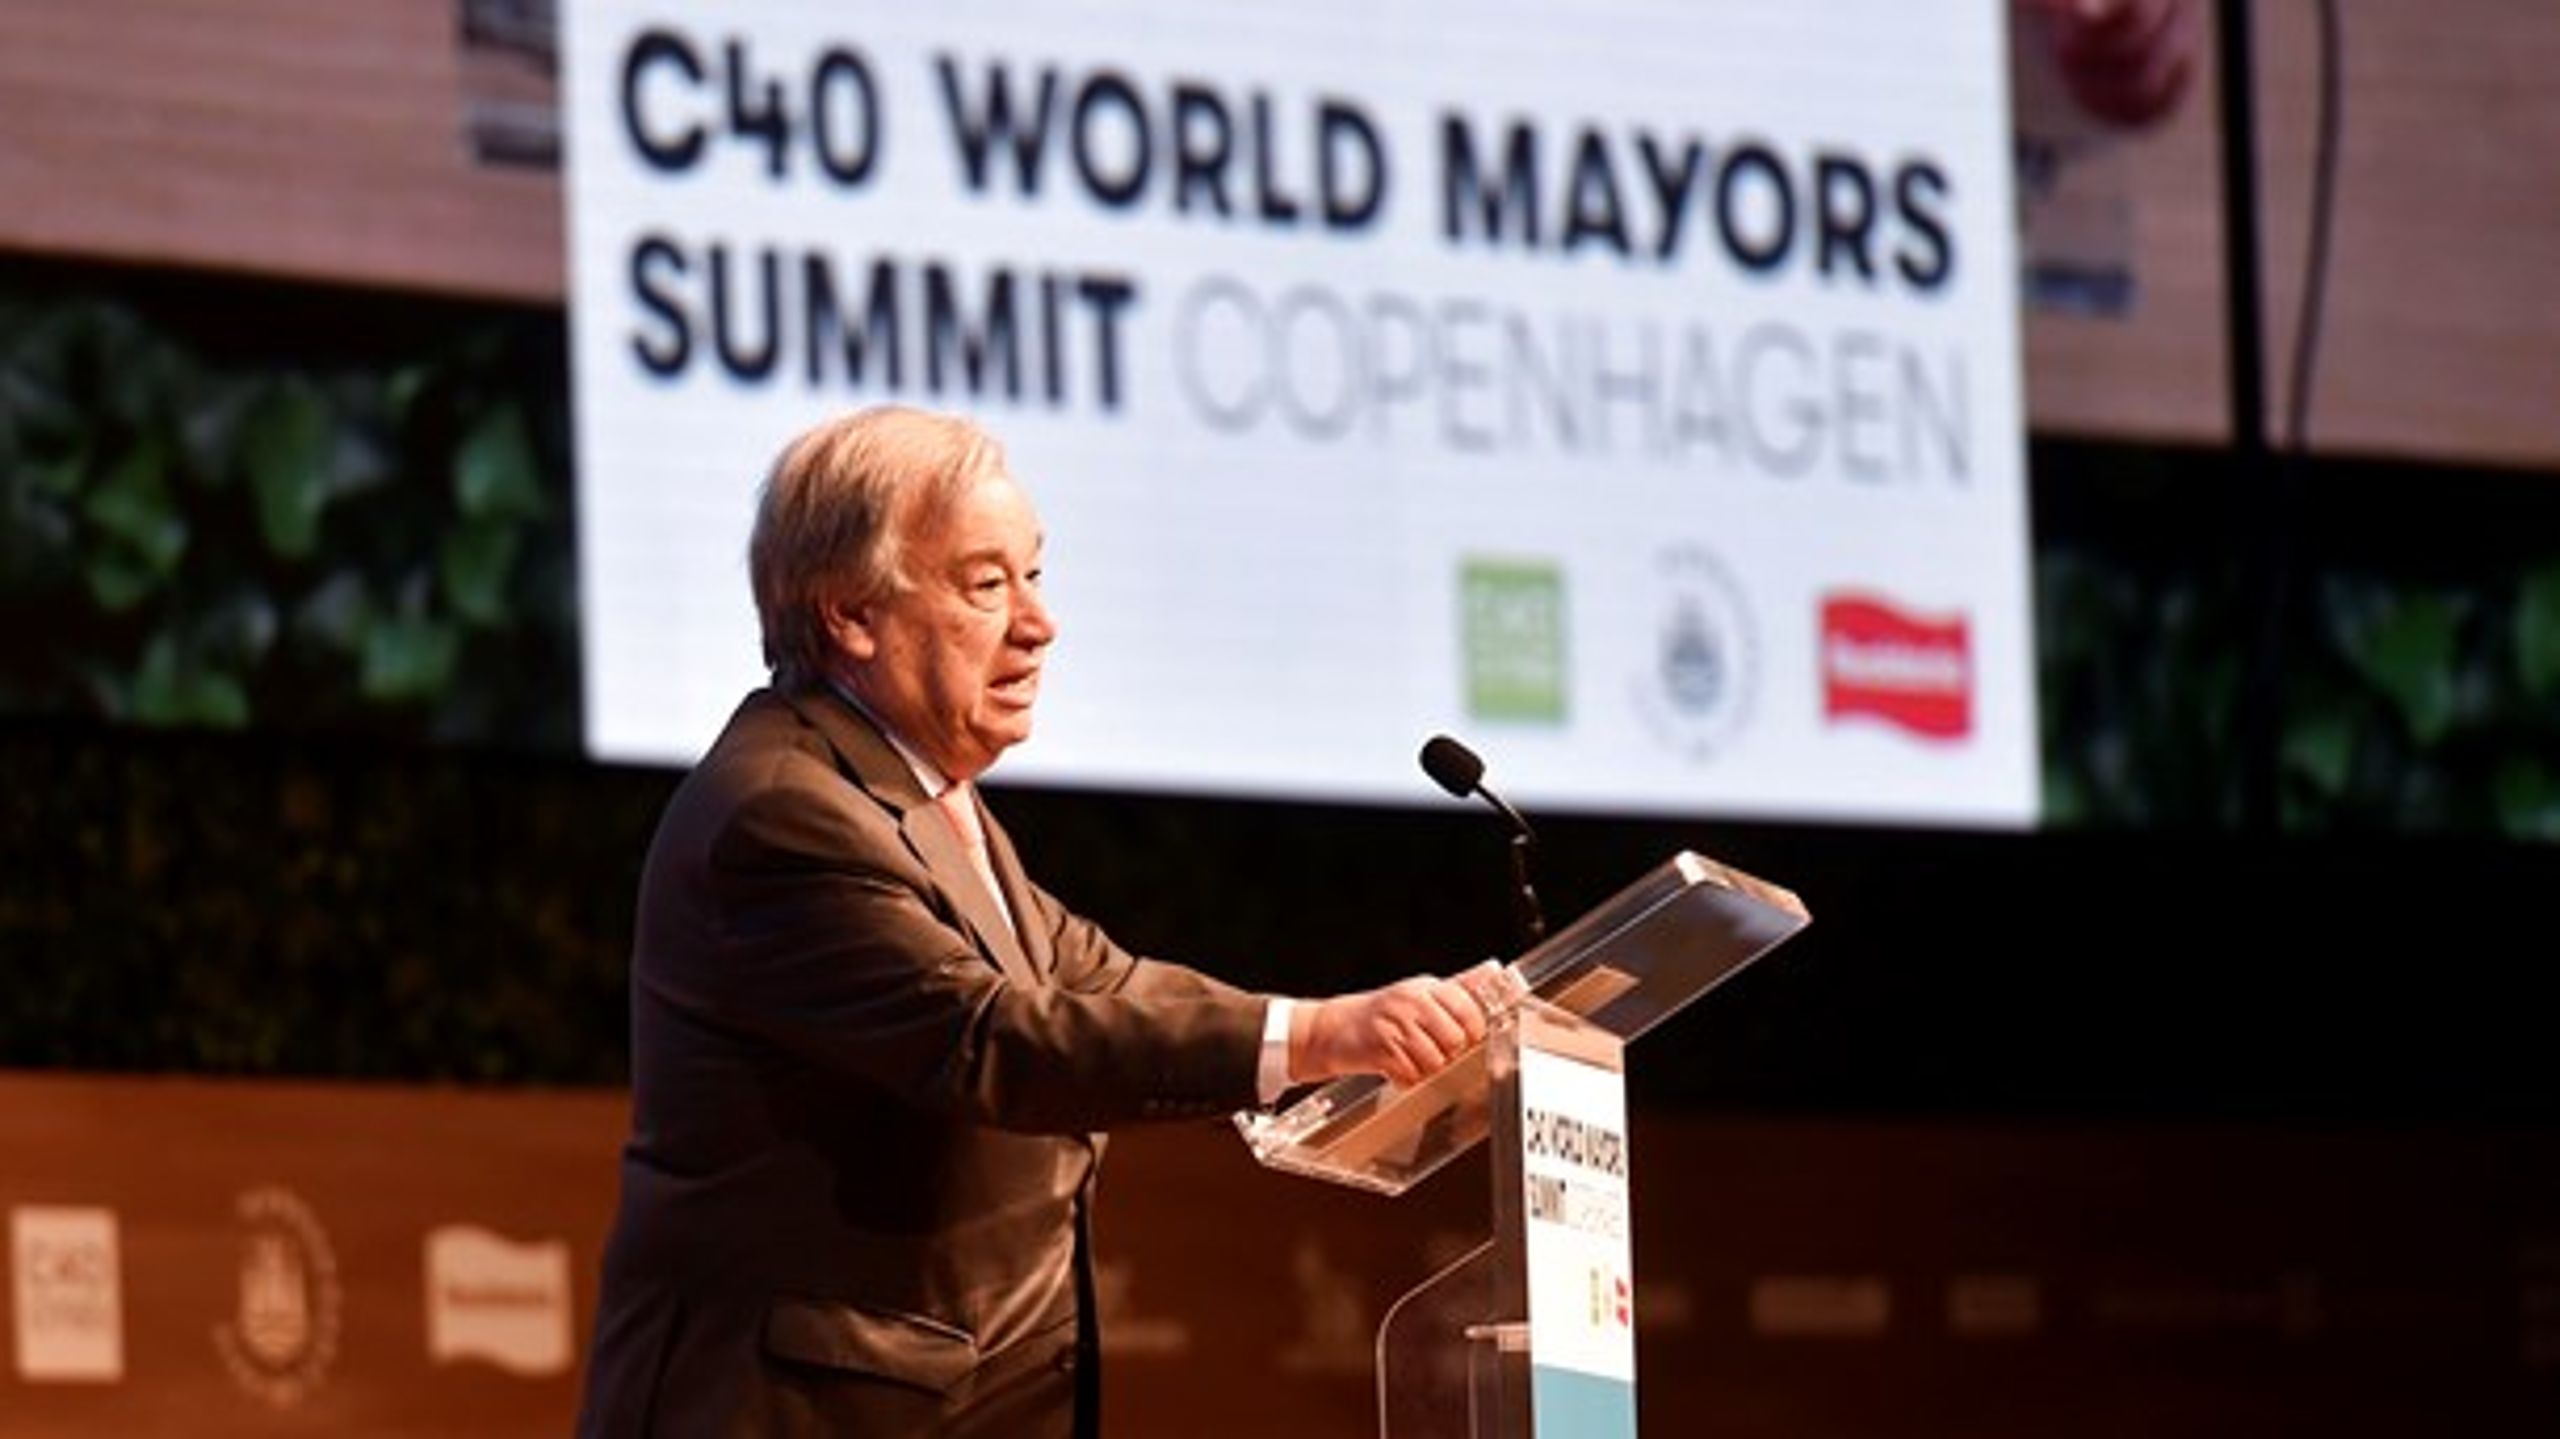 FN's generalsekretær til C40 World Mayours Summit i København. Topmødet&nbsp;viste hovedstadens afgørende rolle i den bæredygtige omstilling, mener politikere og iværksættere.